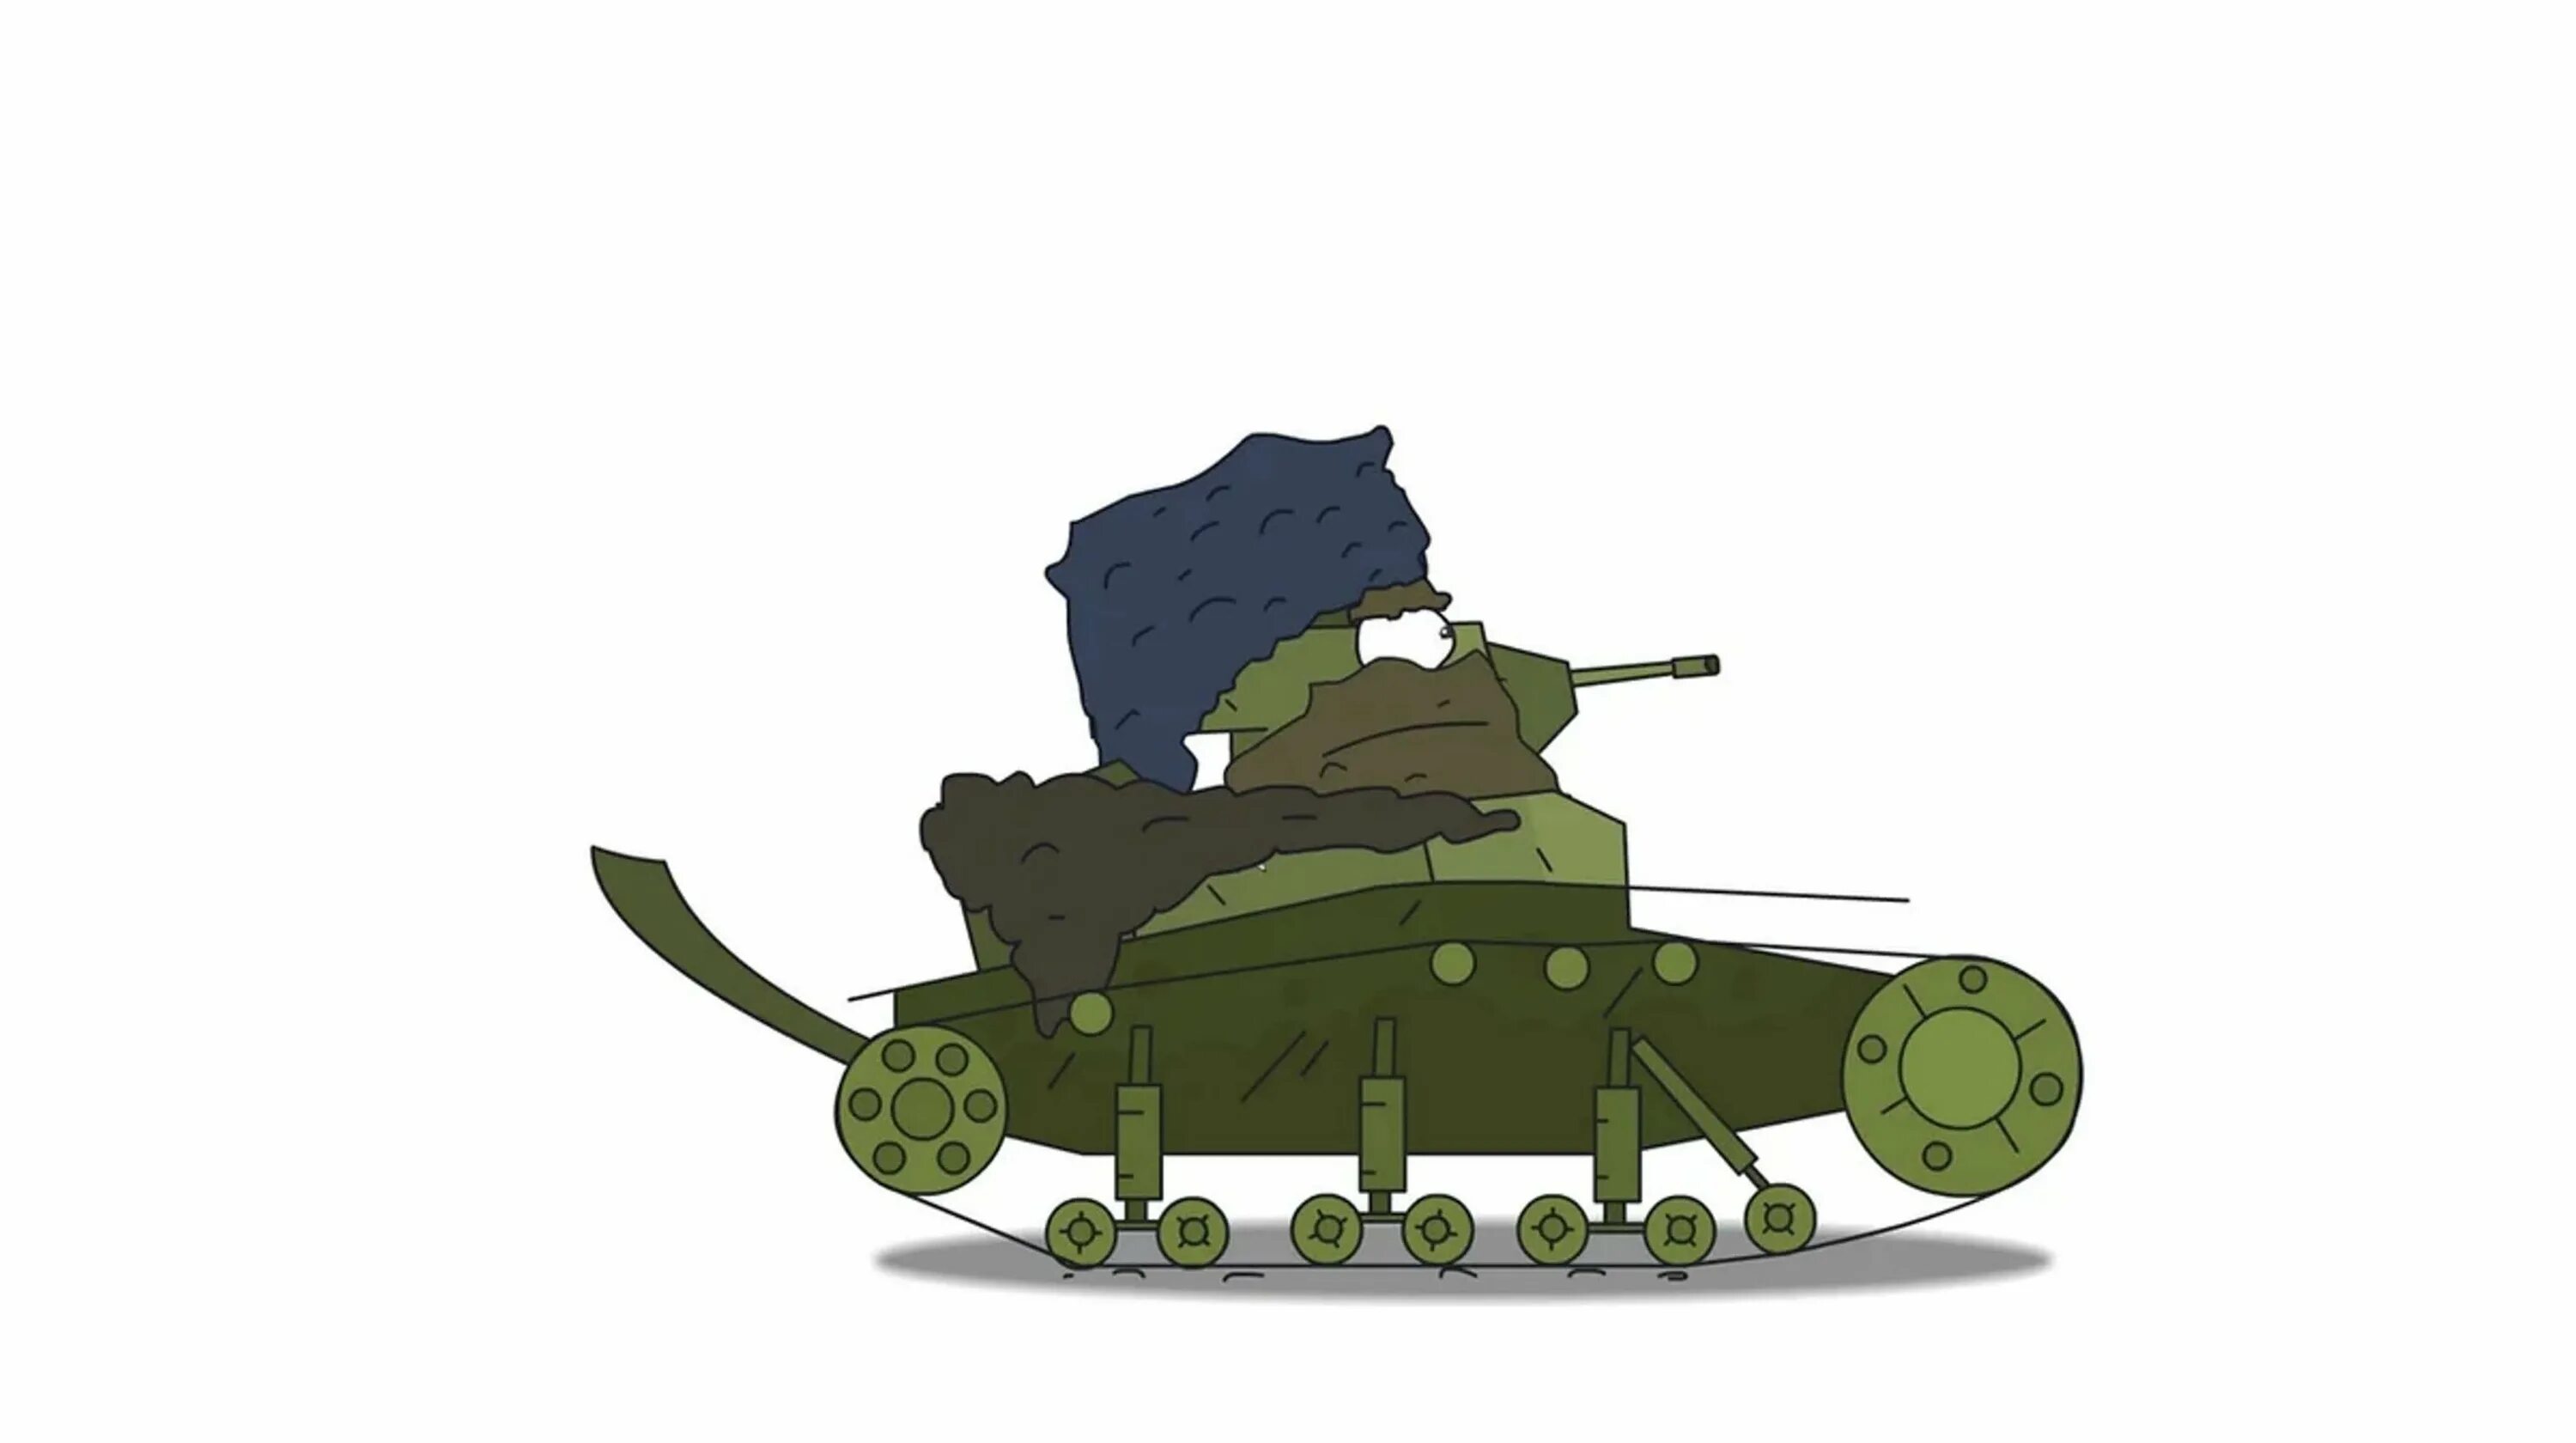 Генерал МС 1 Геранд. МС-1 танк Геранд. Танк МС-1 Геранд генеранд.